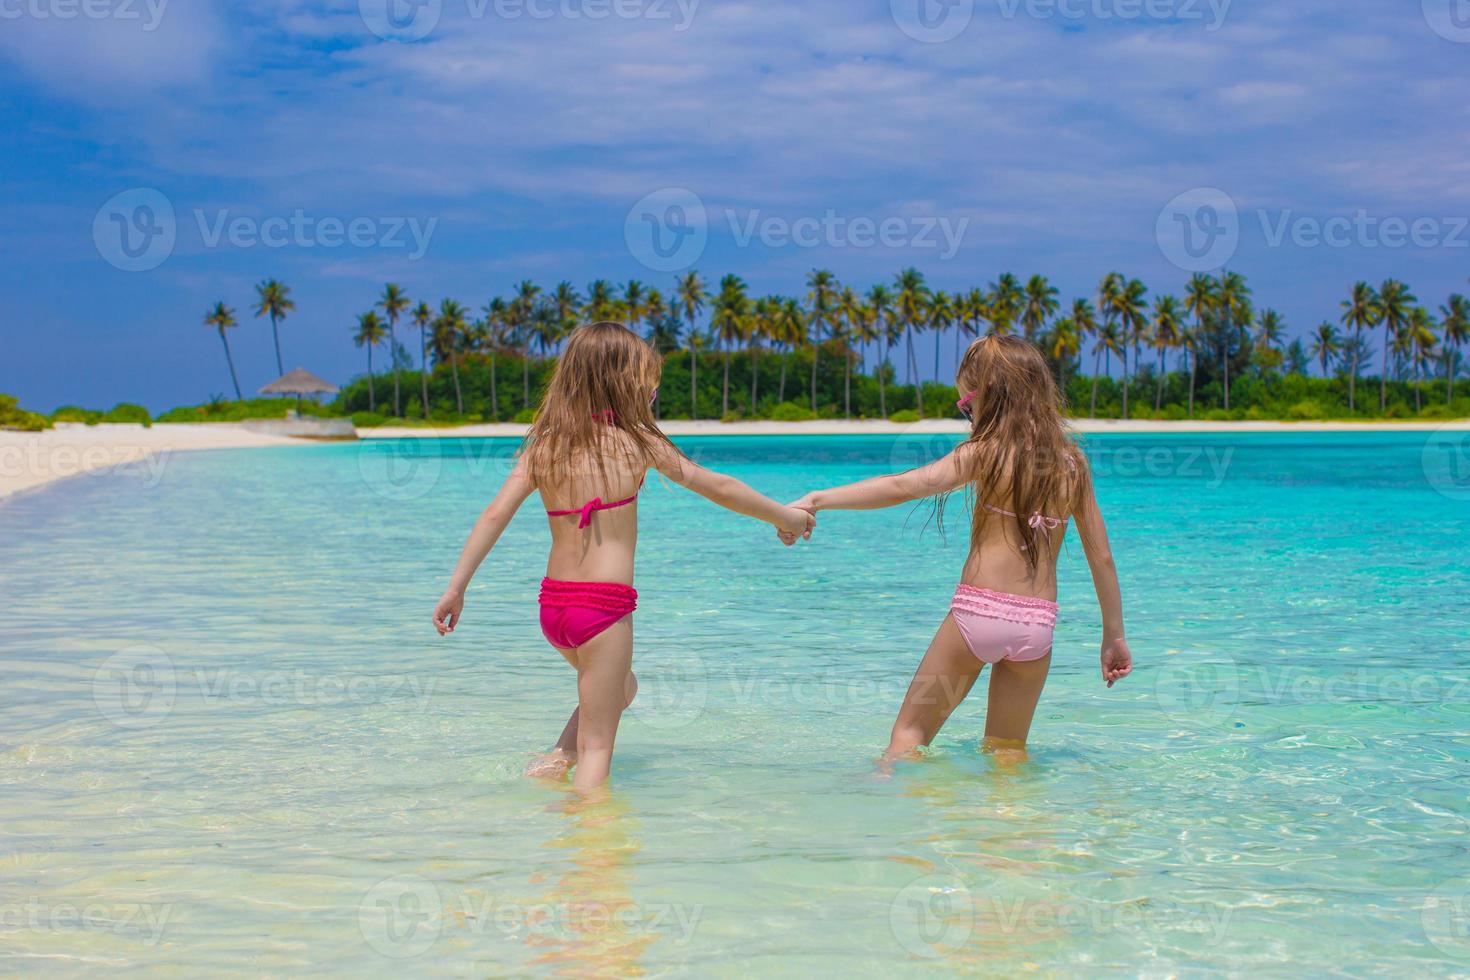 adoráveis meninas felizes se divertem em águas rasas nas férias na praia foto